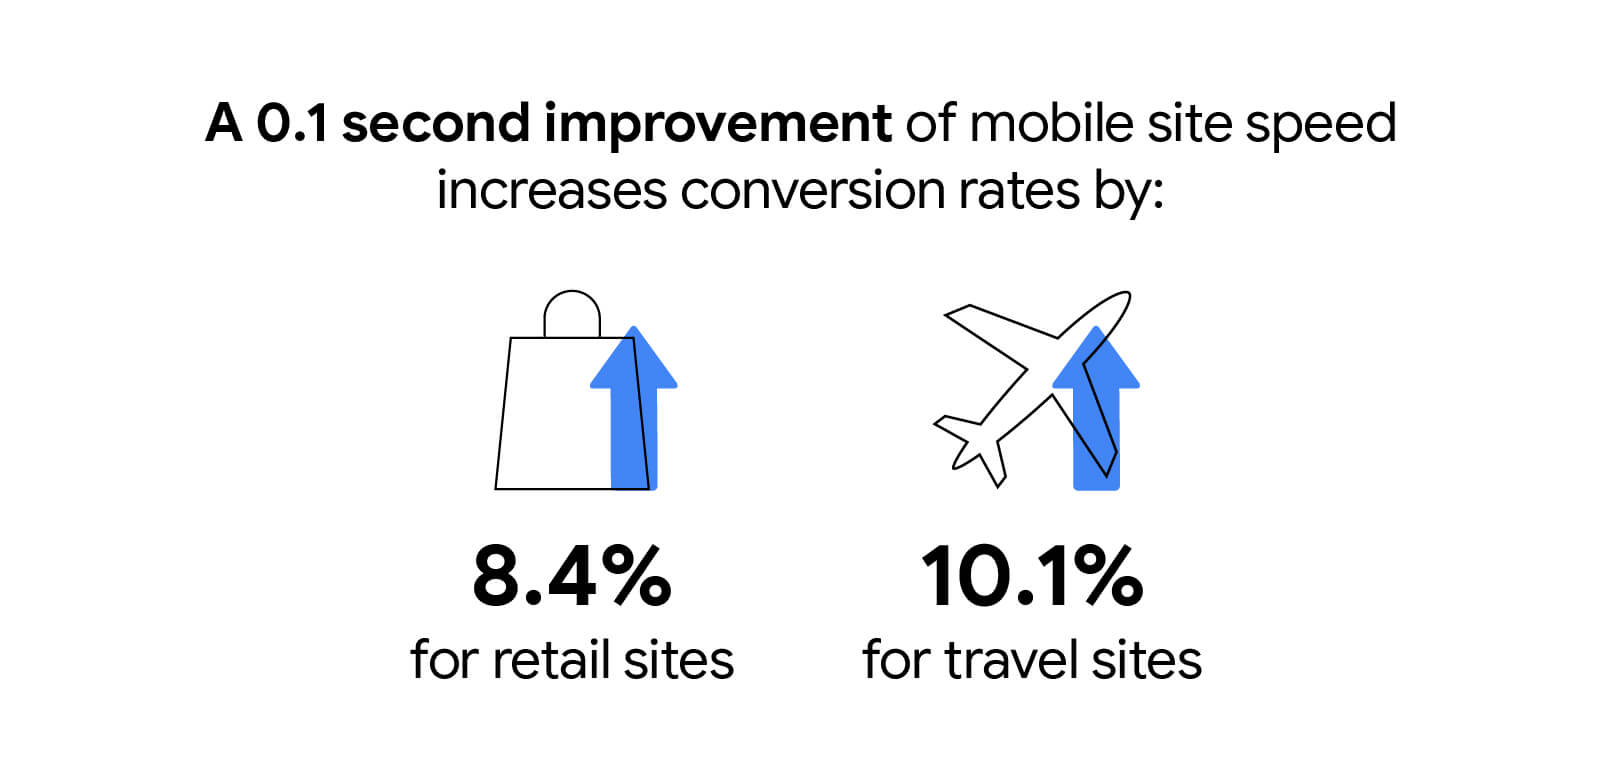 모바일 사이트 속도가 0.1초 개선되면 소매업체 사이트의 전환율이 8.4%, 여행 사이트의 전환율이 10.1% 증가합니다.